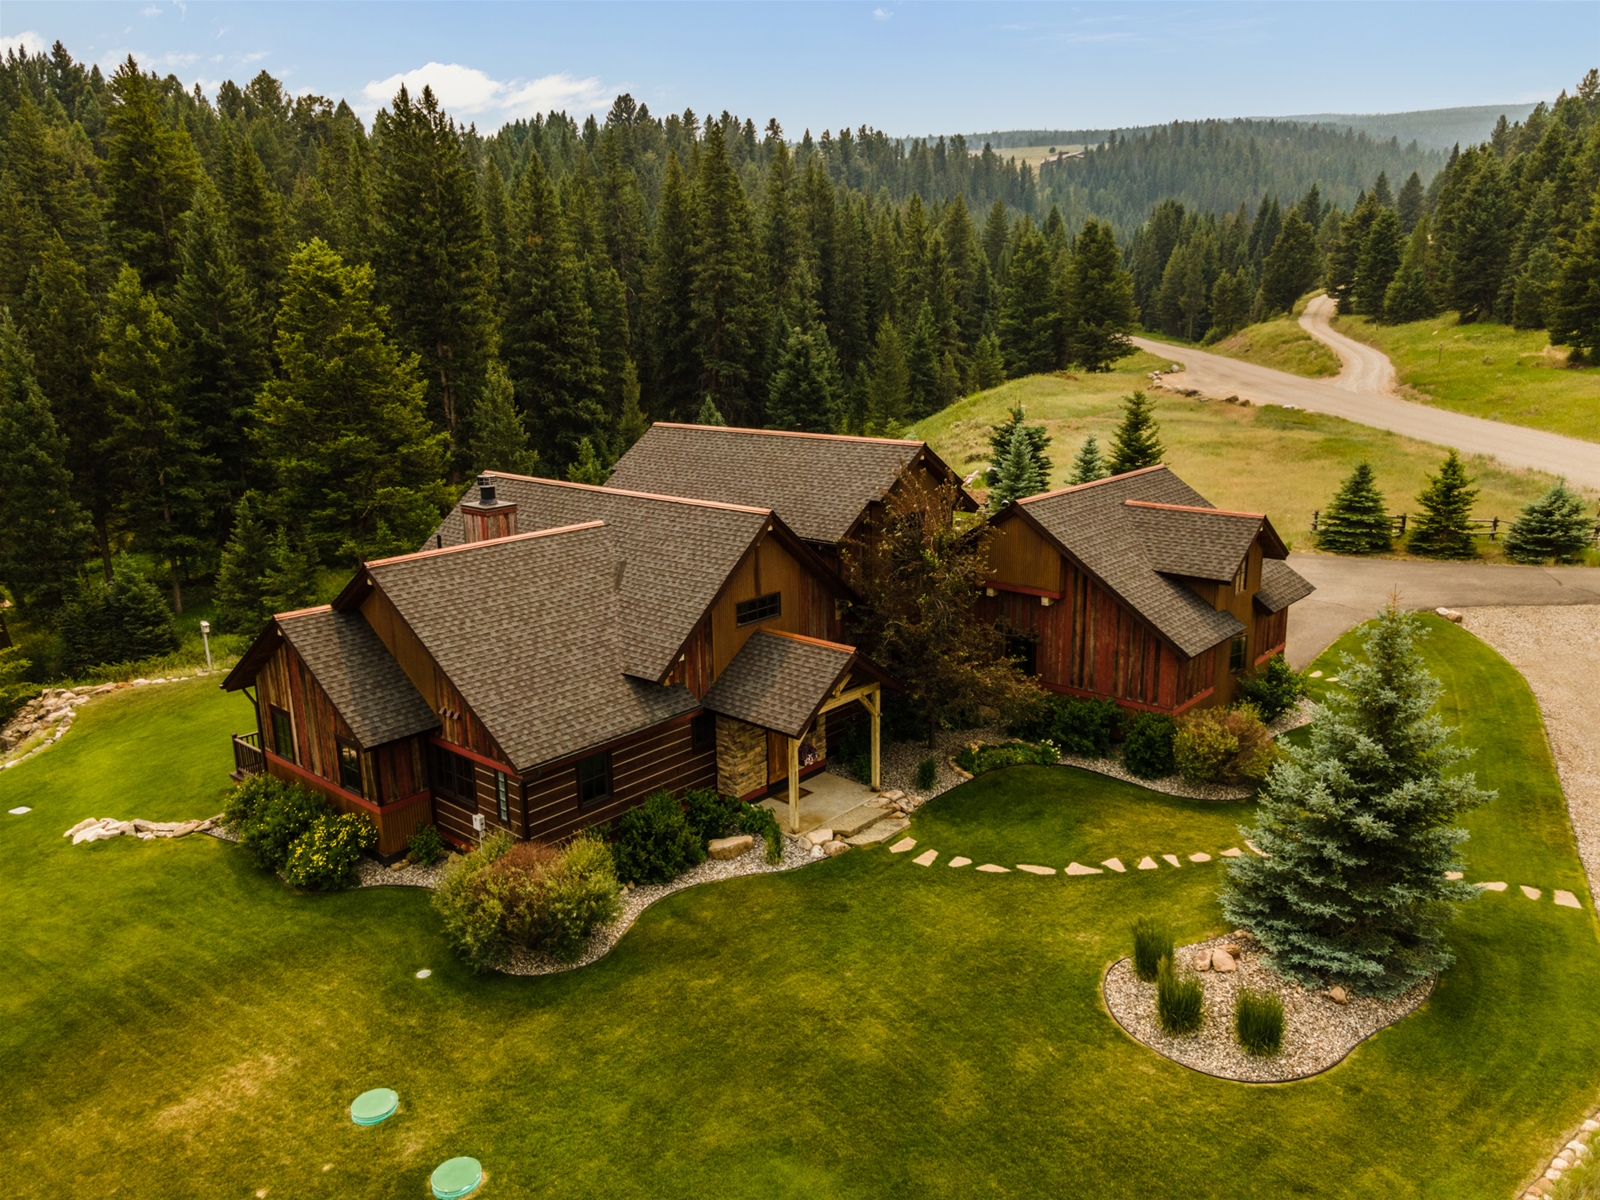 The Wildwood Lodge Vacaation Rental by Wilson Peak Properties